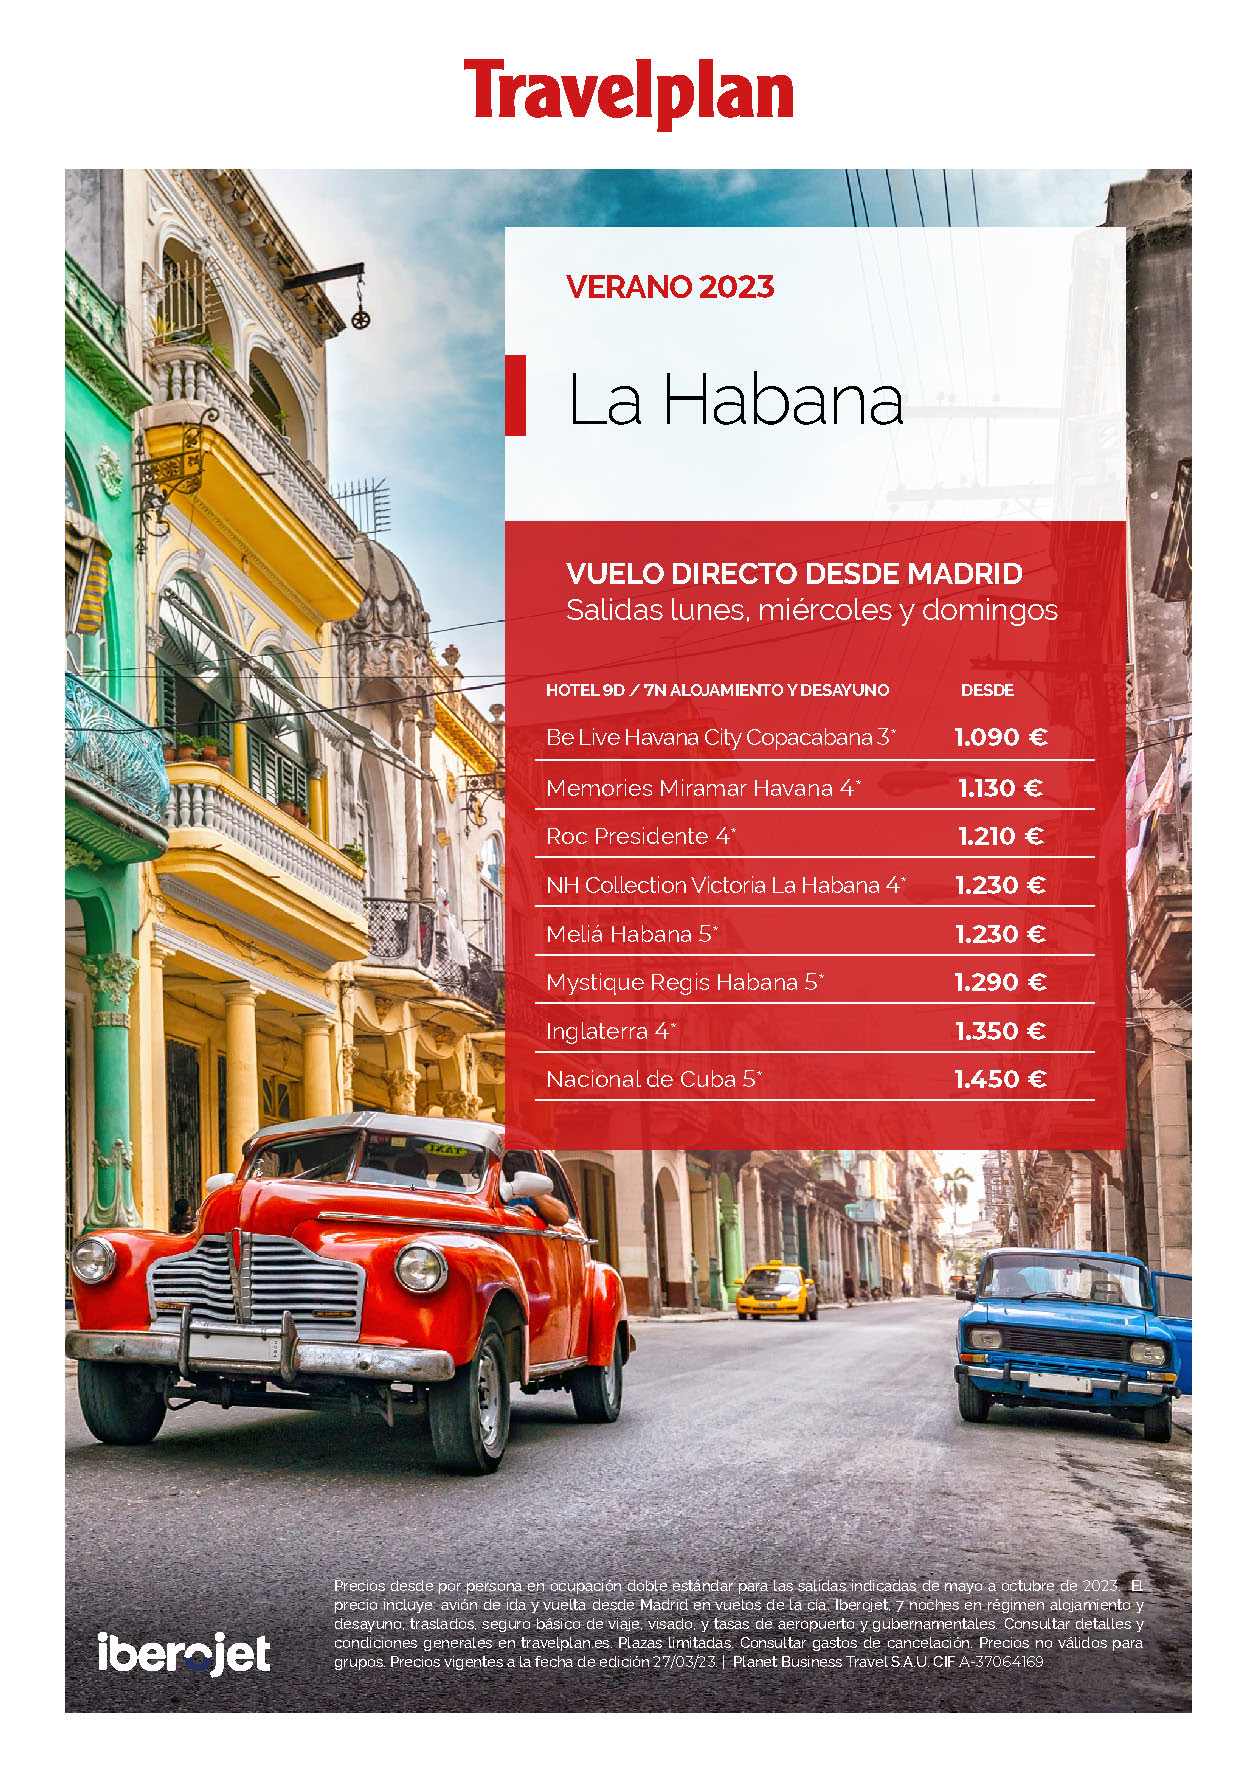 Oferta Travelplan Verano 2023 Estancia en La Habana en AD 9 dias salidas en vuelo directo desde Madrid